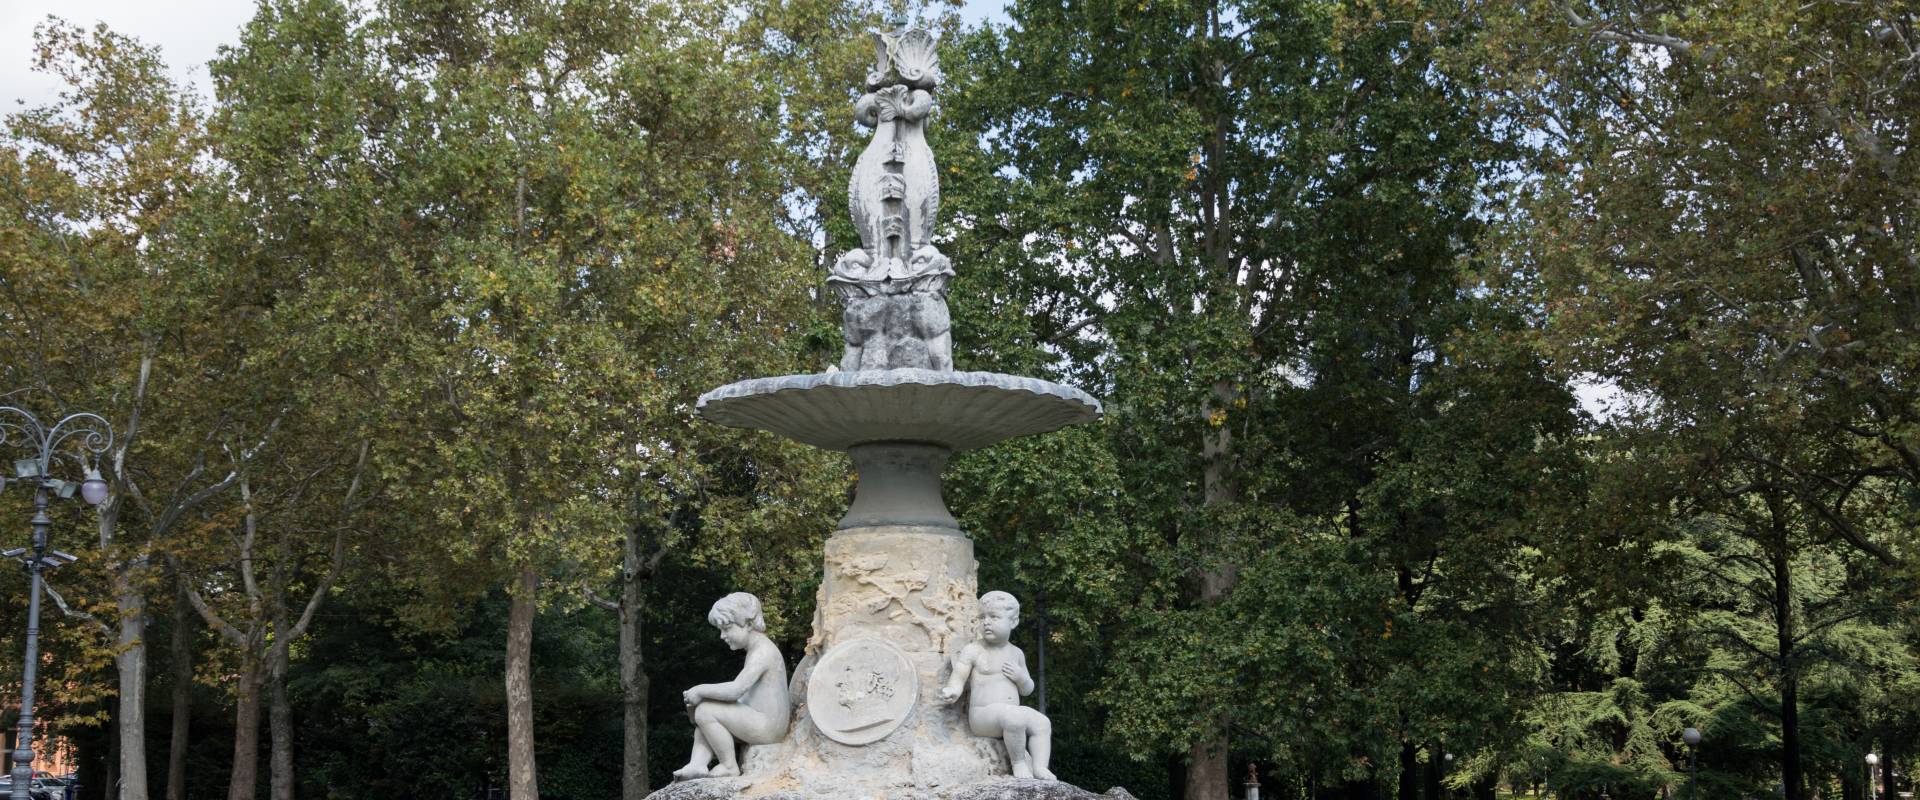 Fontana dei Putti - Giardini Pubblici photo by Alessandro Azzolini